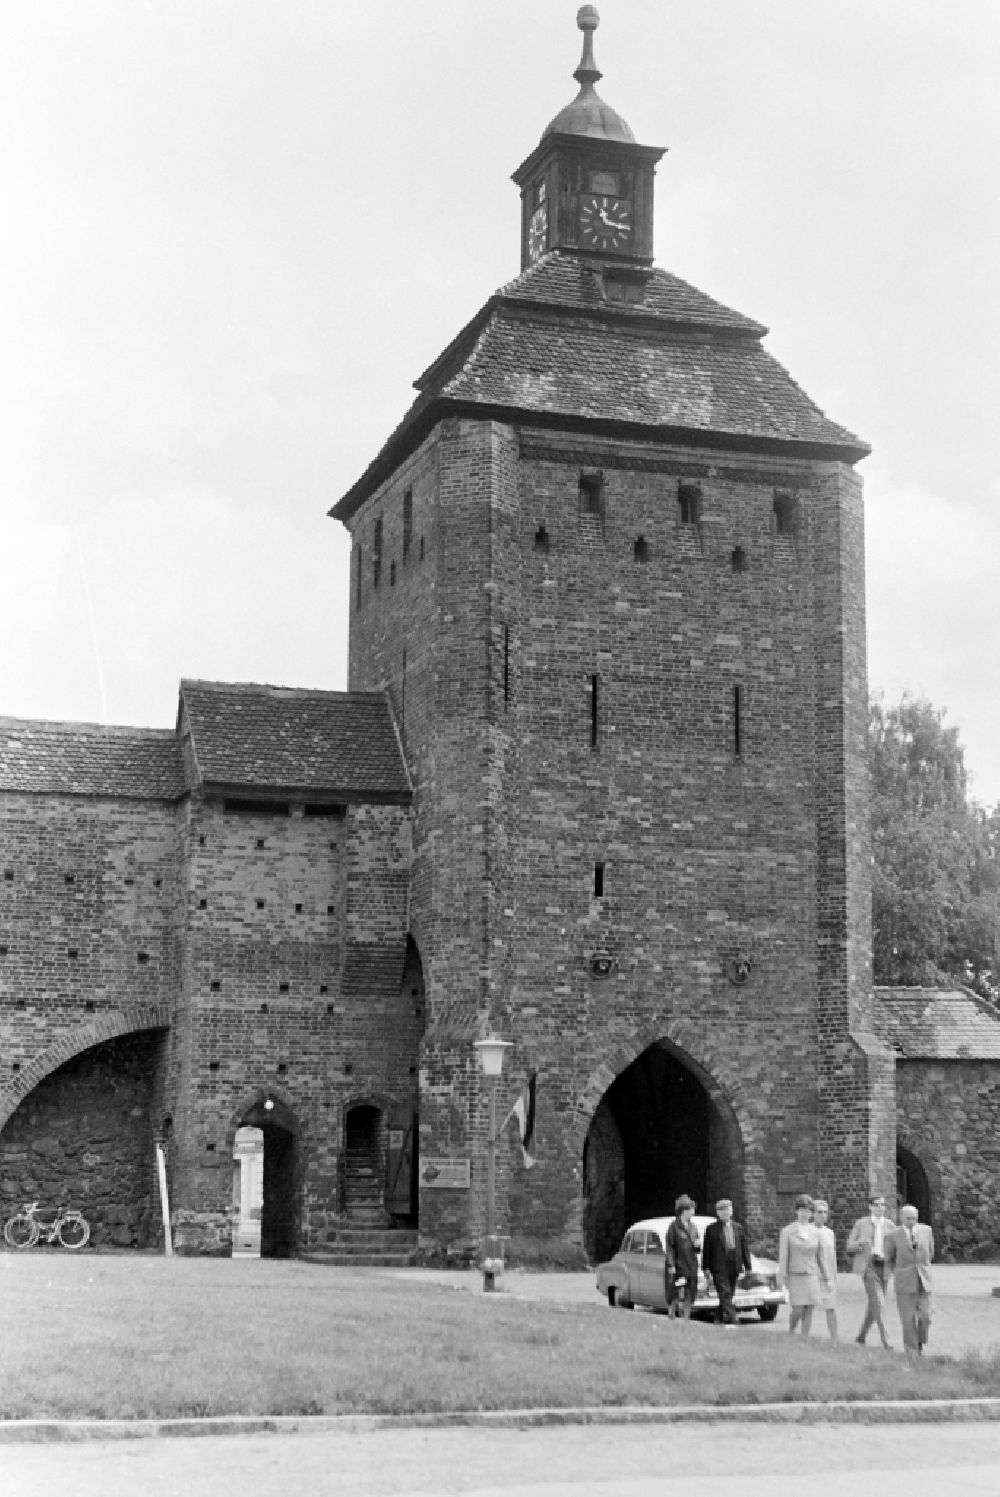 Bernau: Historische Stadtmauer der Altstadt am Steintor in Bernau in der DDR